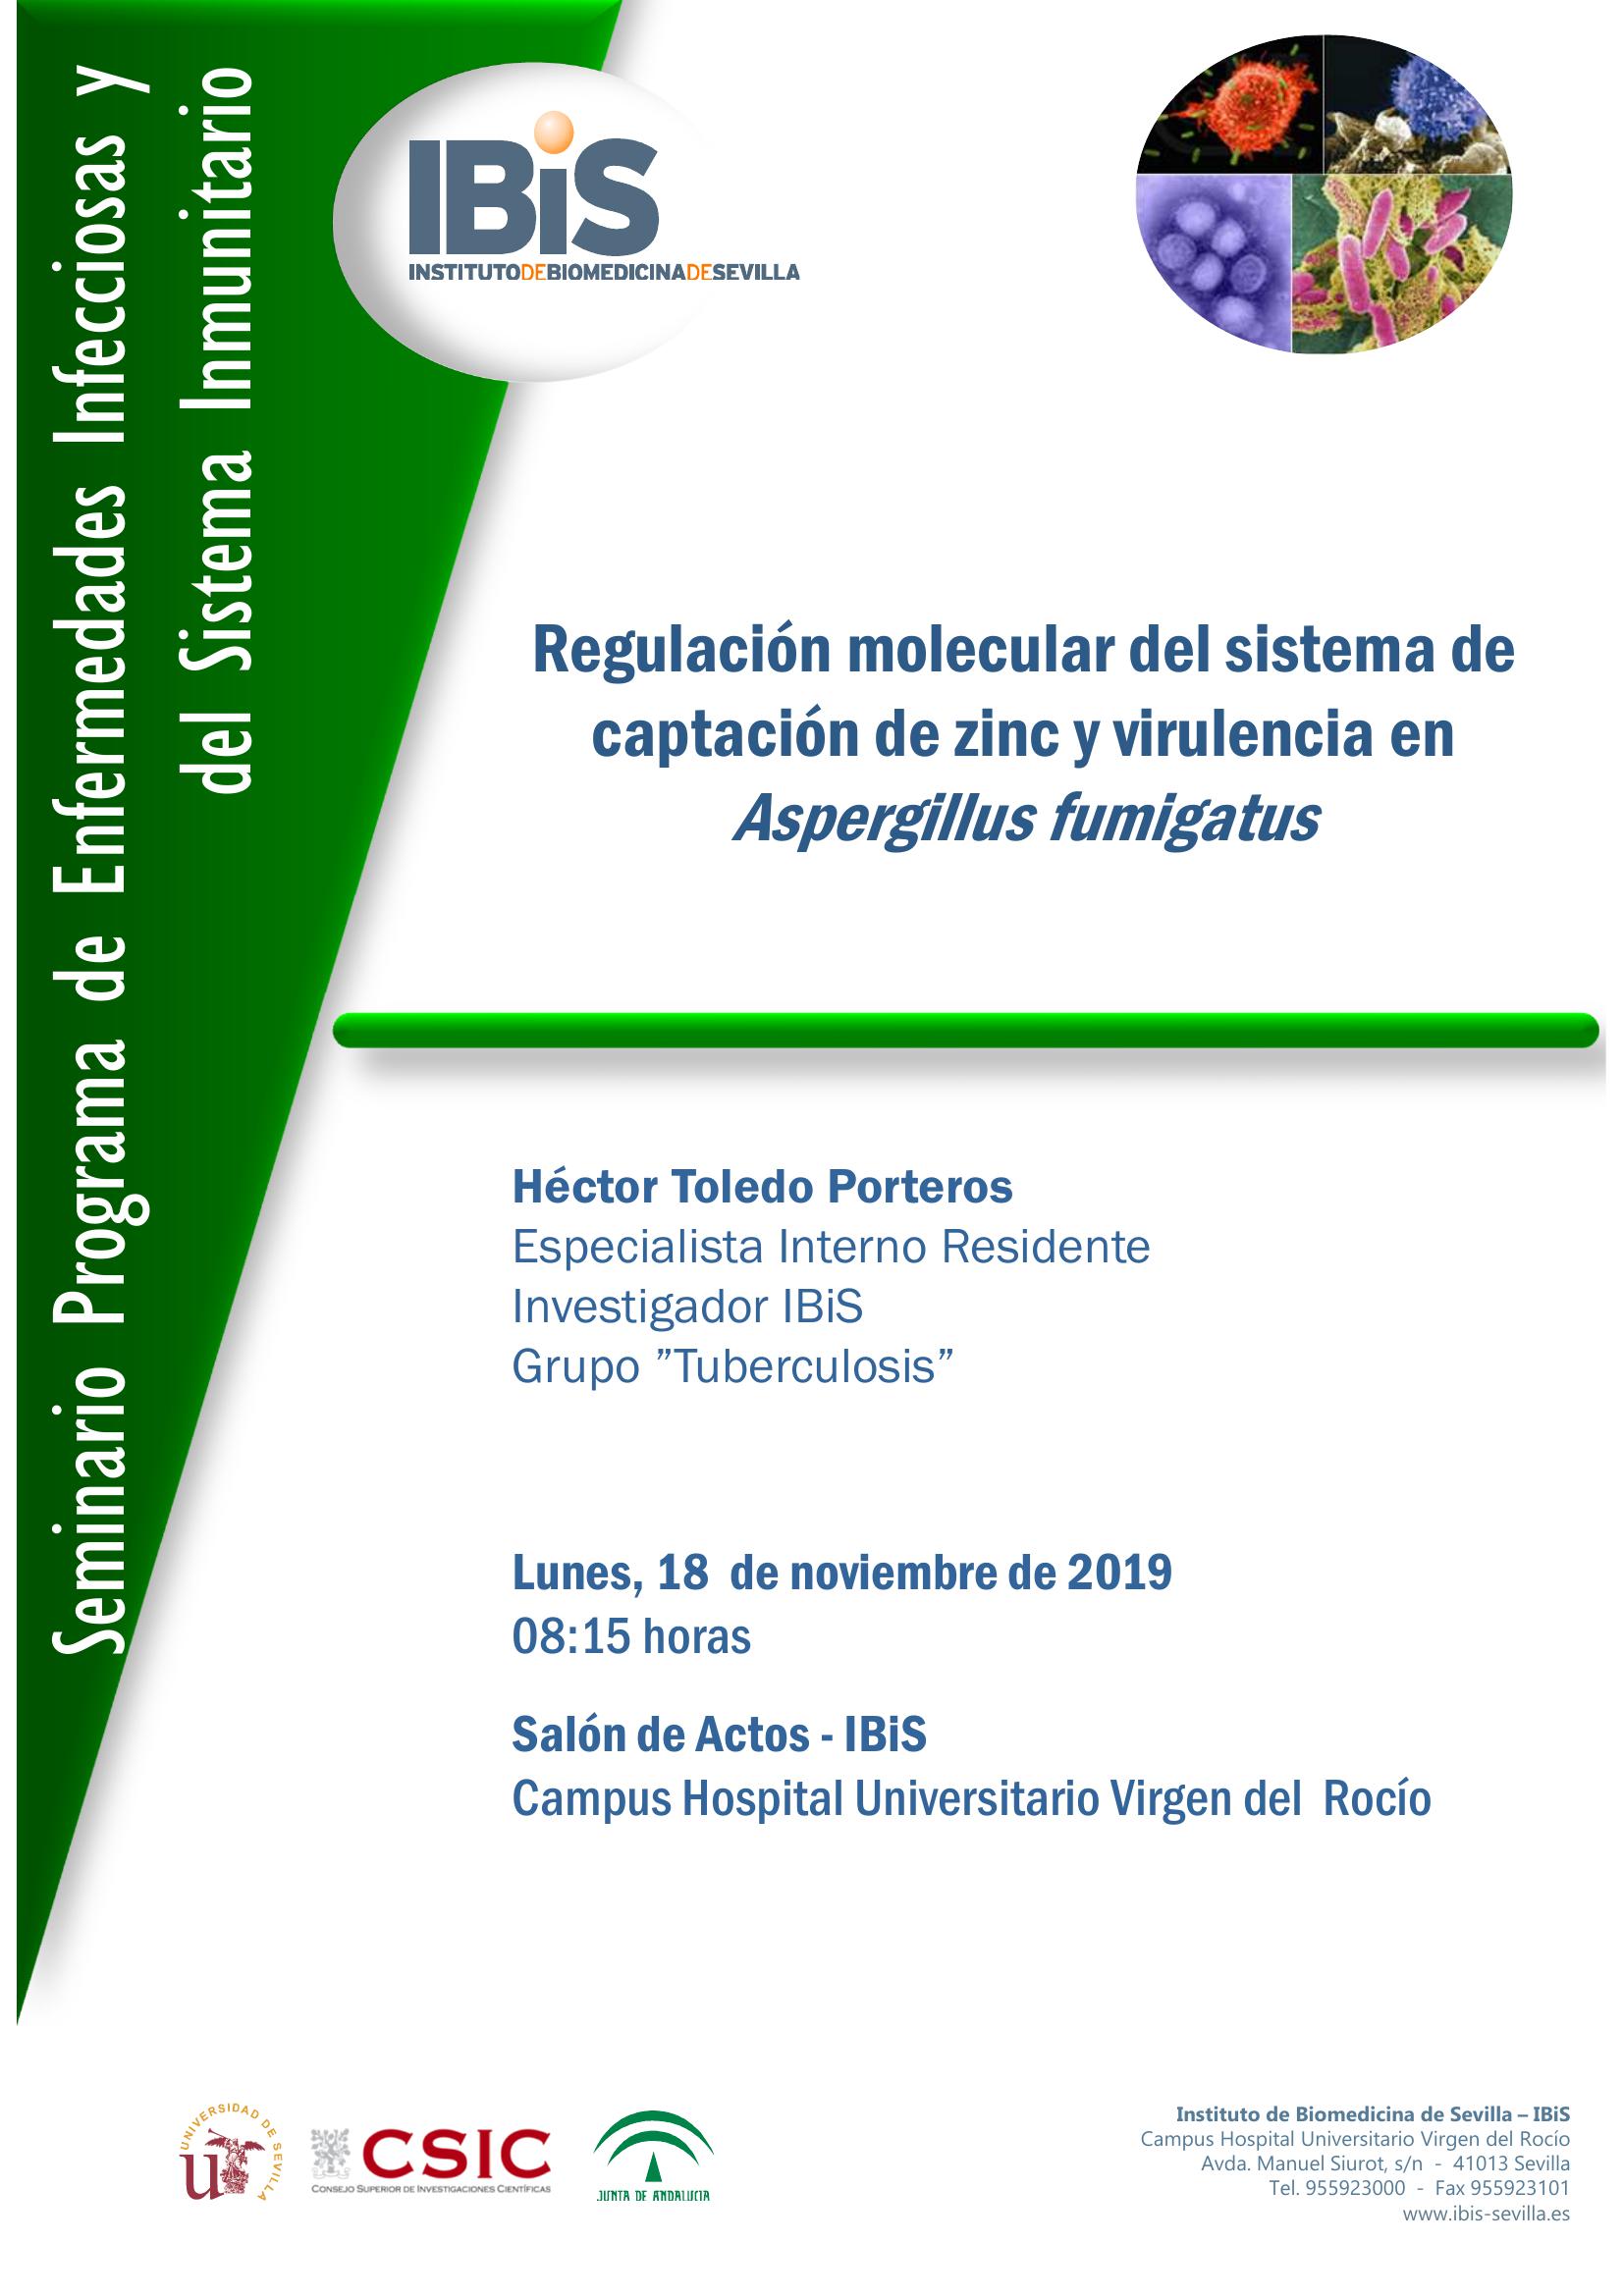 Poster: Regulación molecular del sistema de captación de zinc y virulencia en Aspergillus fumigatus